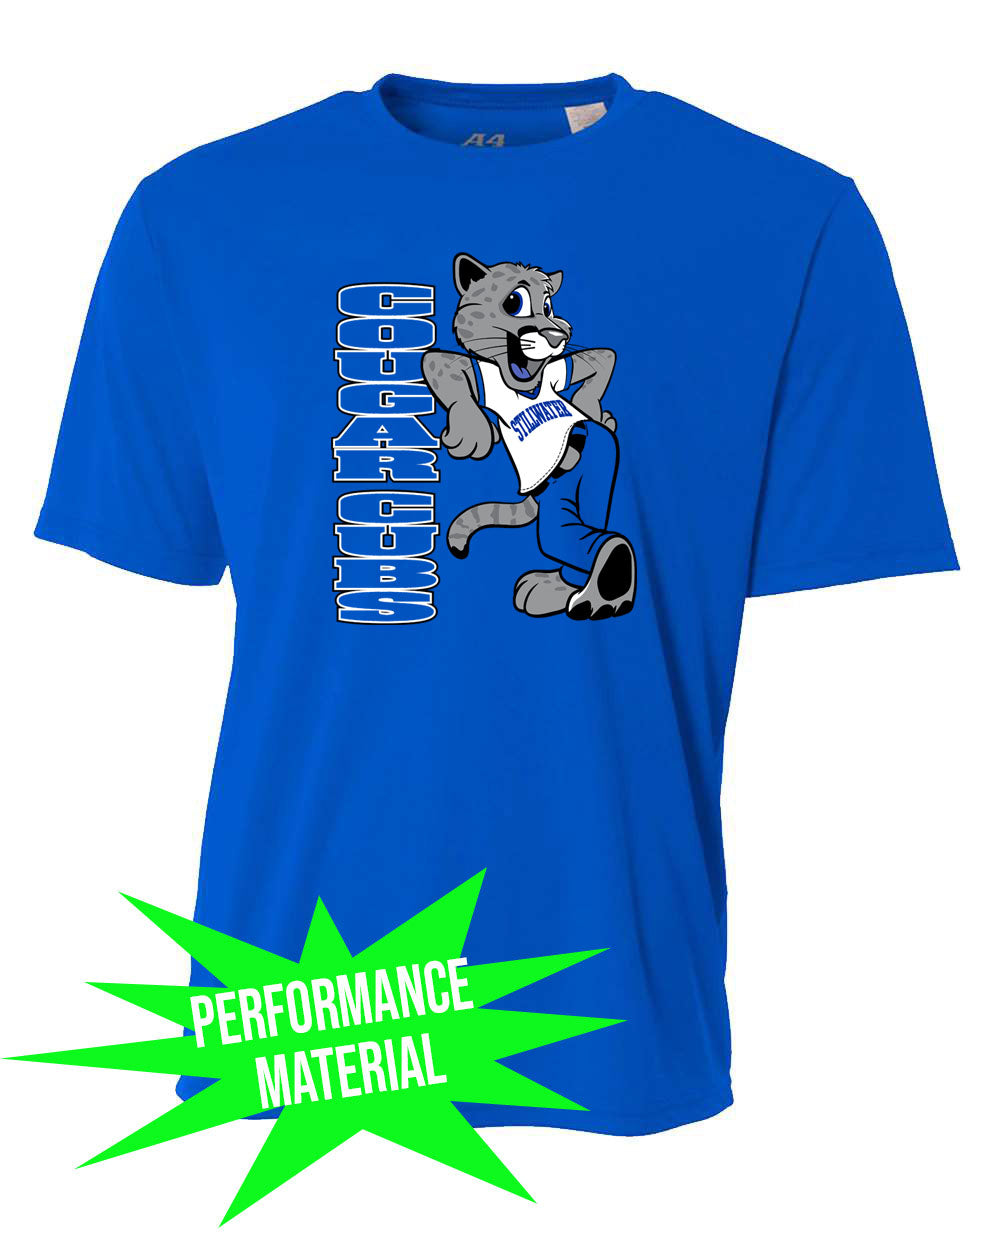 Stillwater Performance Material T-Shirt Design 21